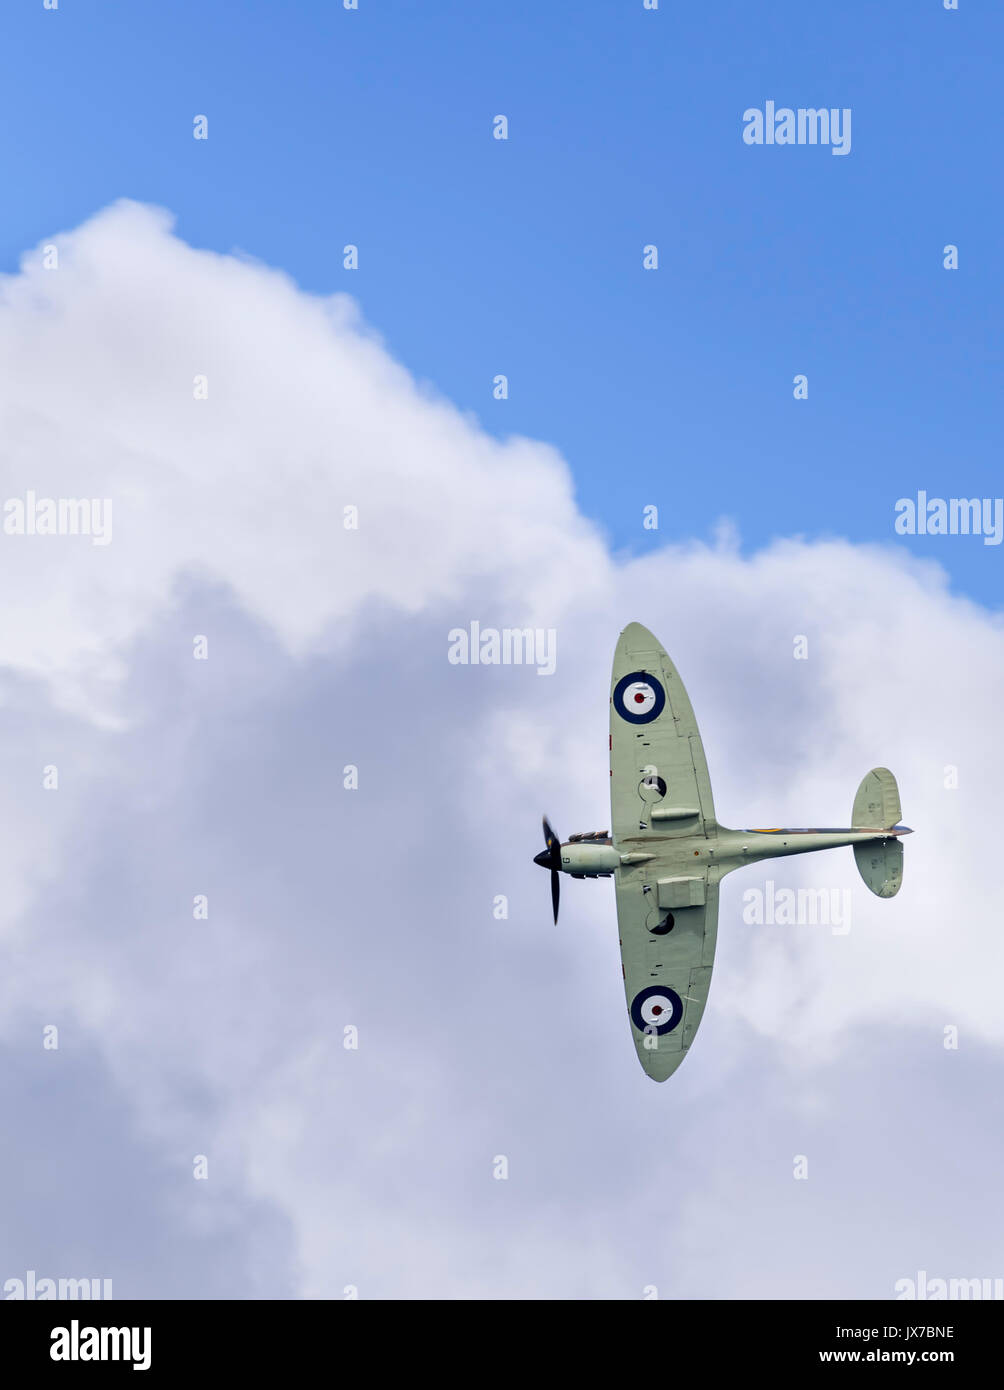 La Battaglia di Bretagna Memorial di volo Spitfire P7350 (F Mk IIa) Banca hard a destra verso la copertura nuvolosa Foto Stock